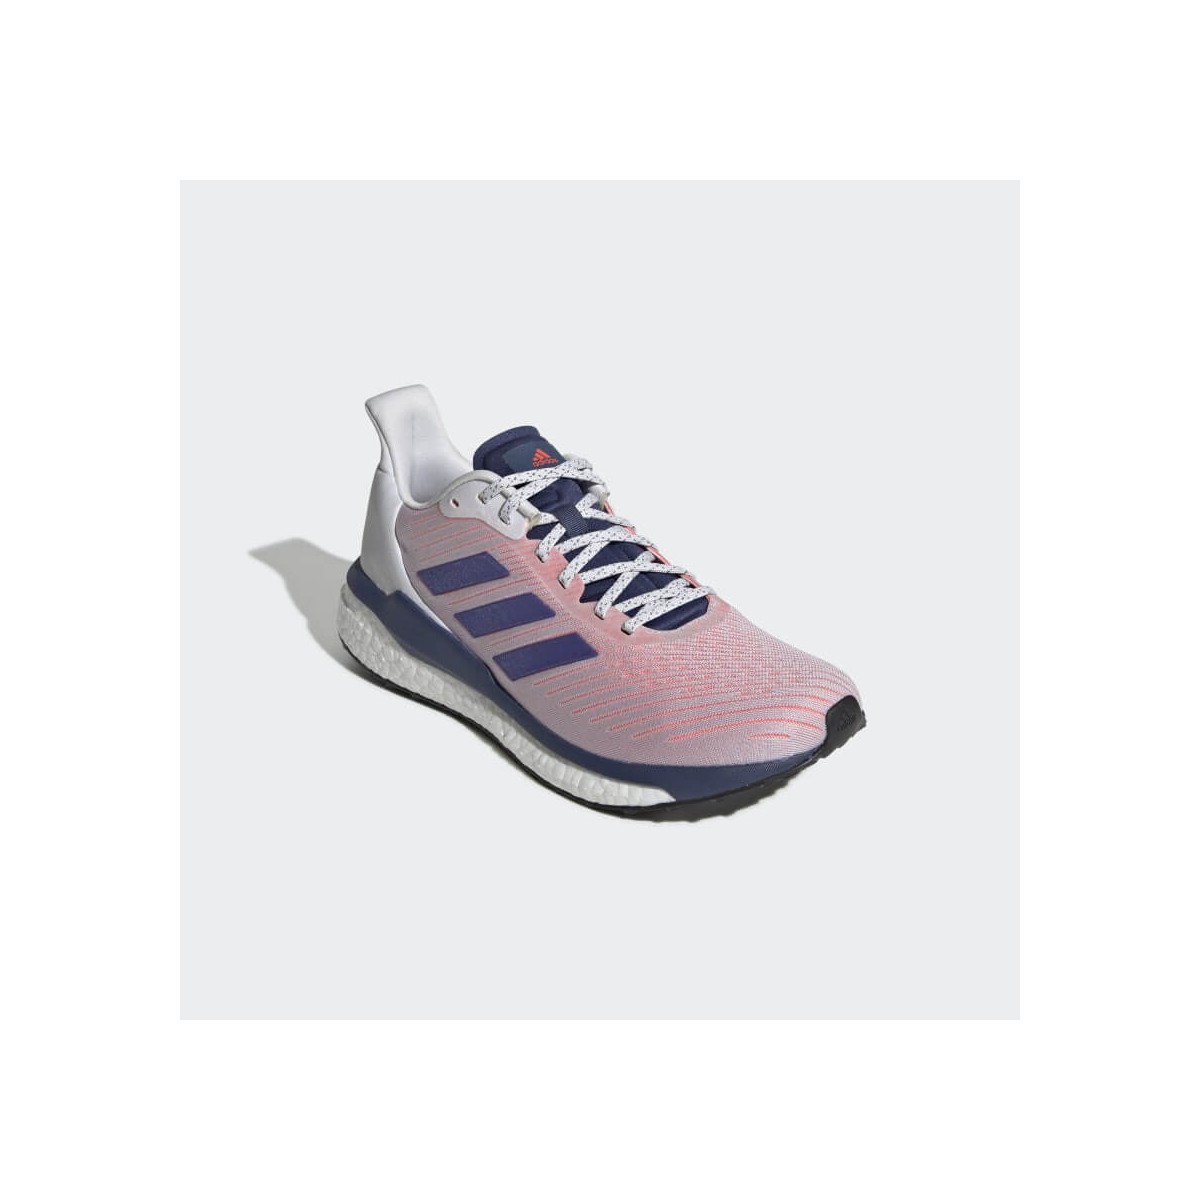 estudio Recreación Nueva llegada Zapatillas Adidas Solar Drive 19 Rosa Azul Hombre